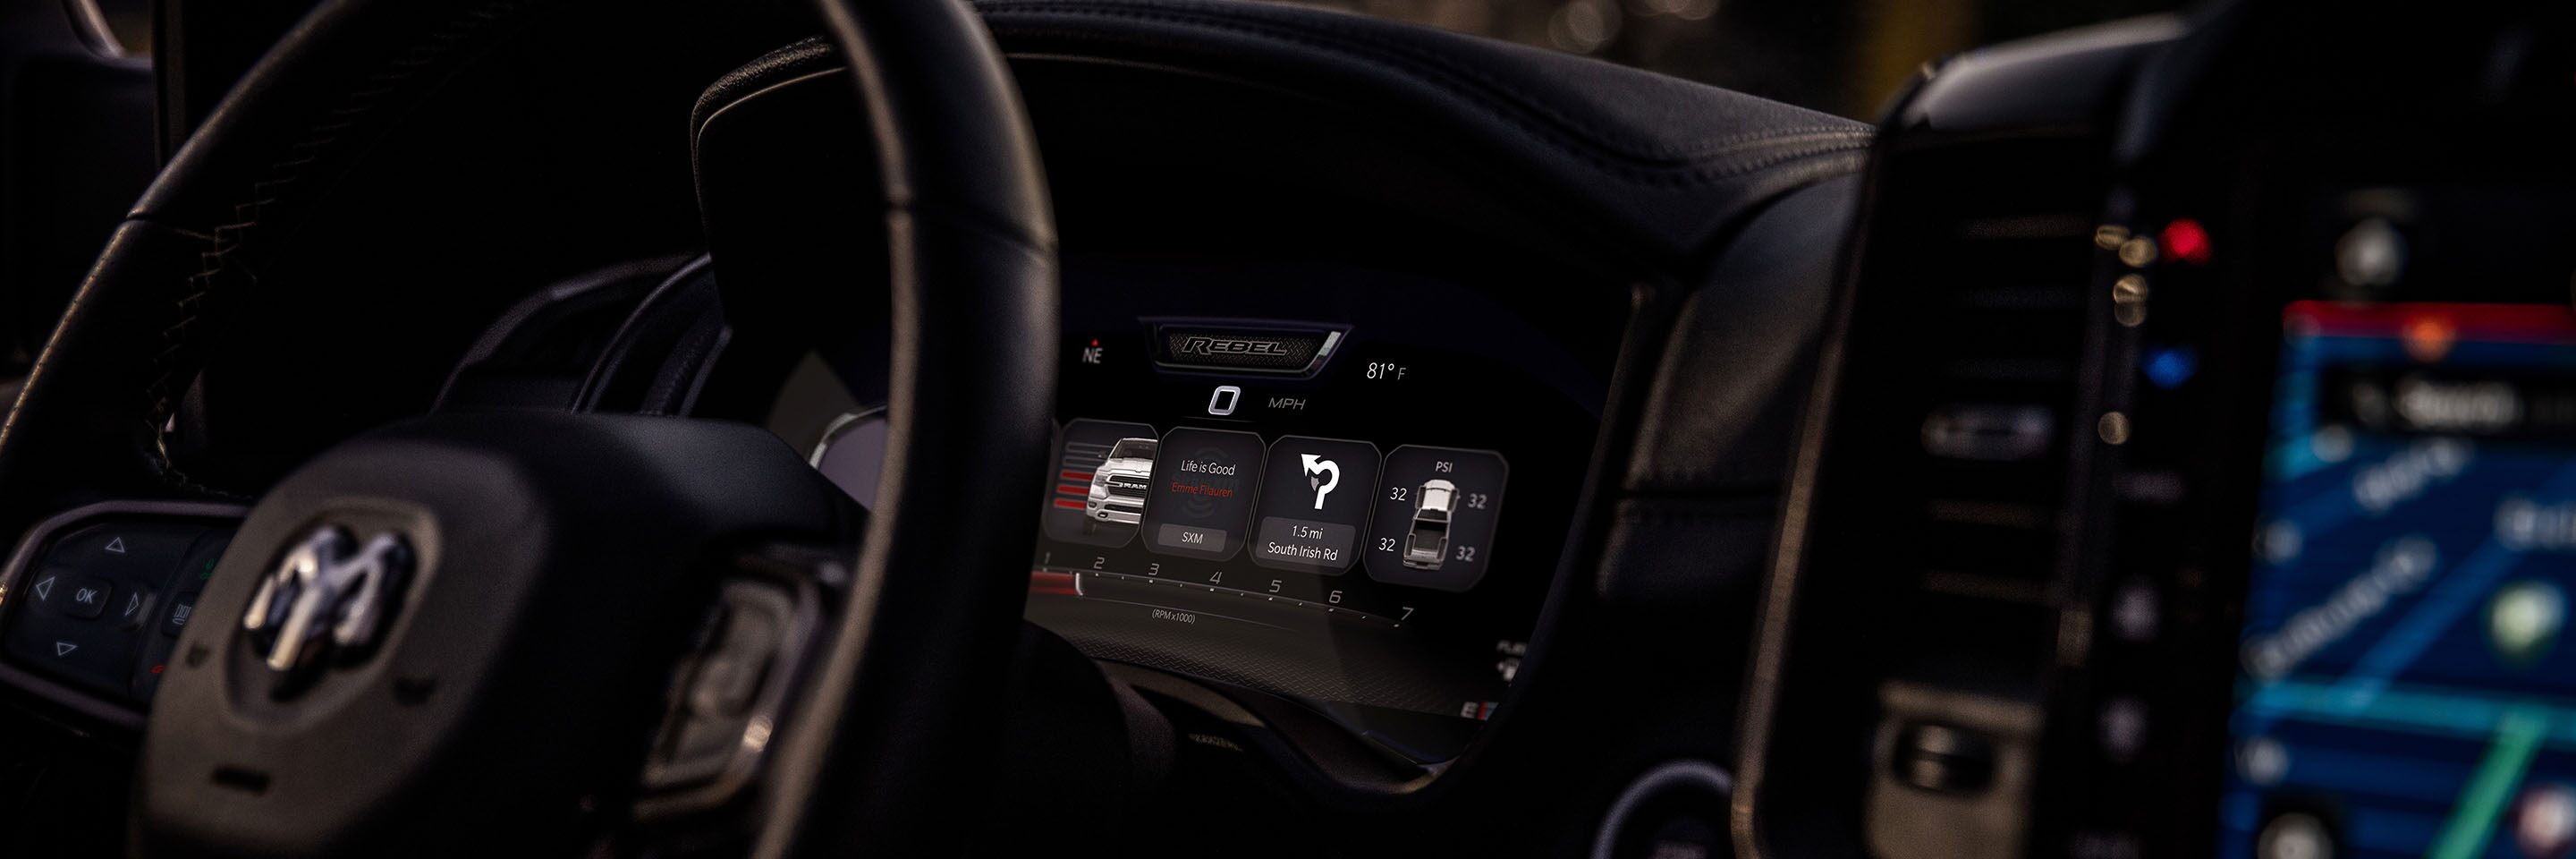 Comprar Panel de interruptores de pantalla táctil para coche